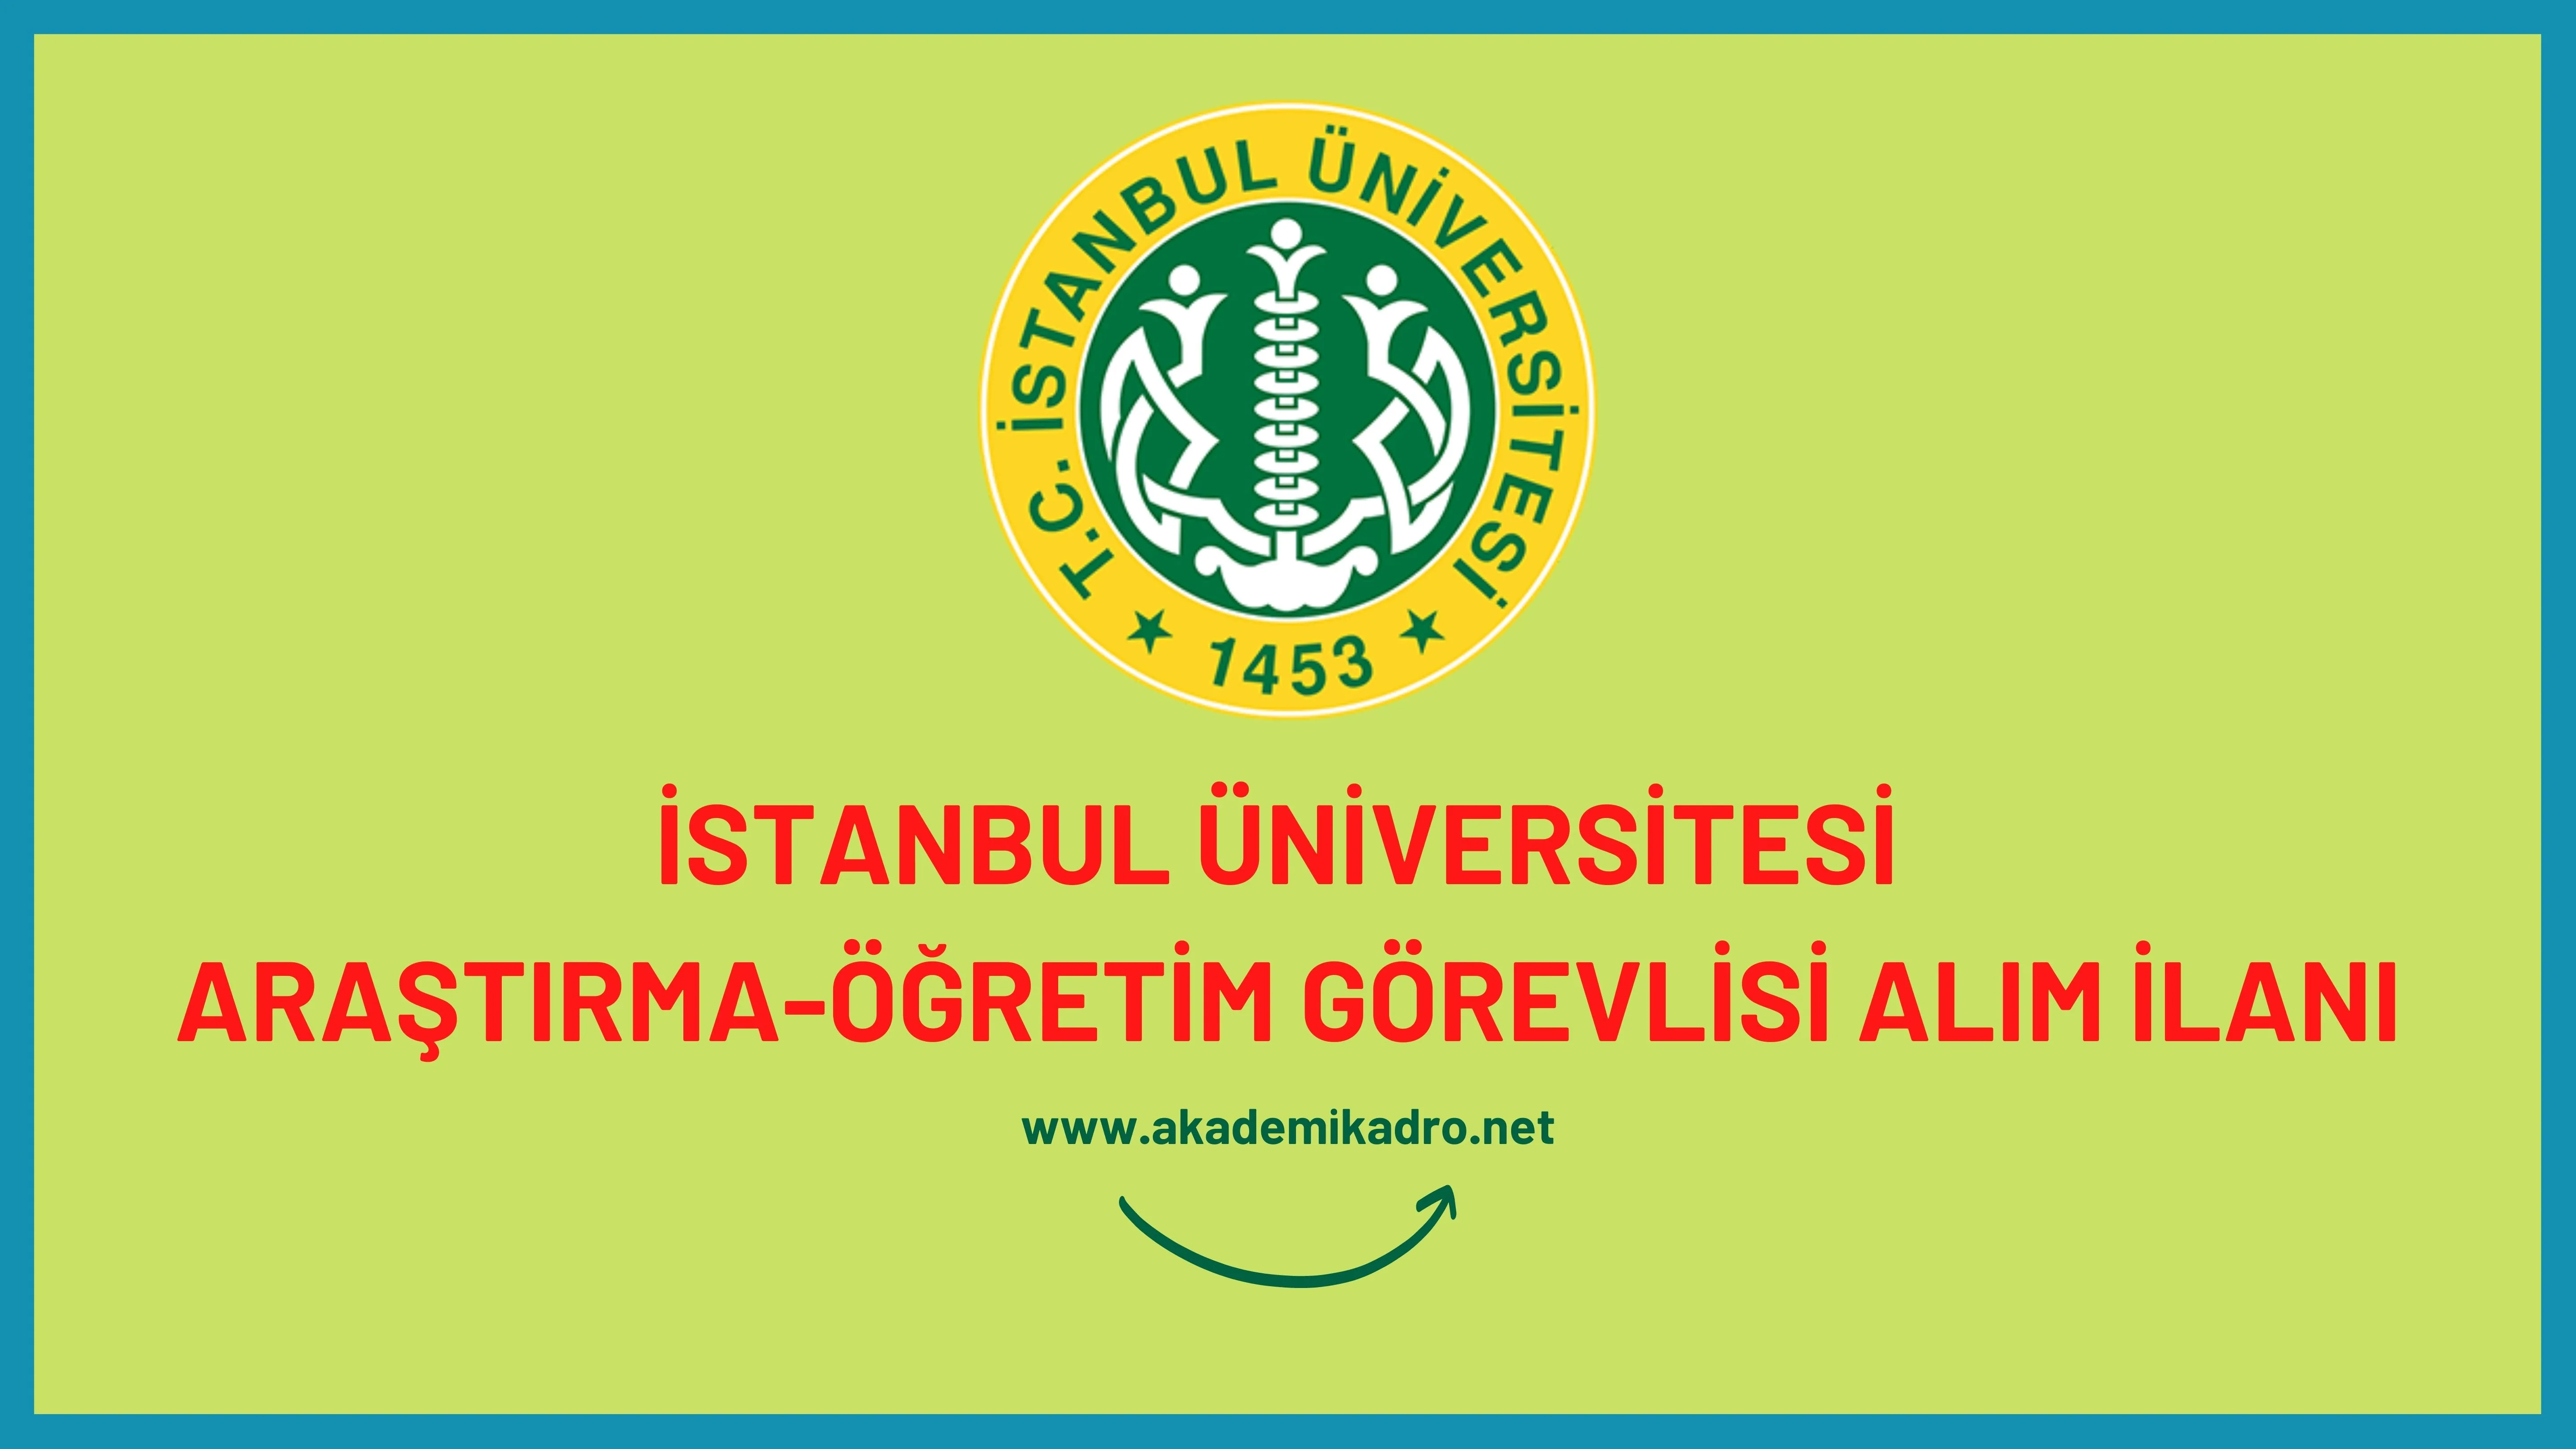 İstanbul Üniversitesi 2 Öğretim Görevlisi ve Araştırma görevlisi alacaktır. Son başvuru tarihi 12 Aralık 2022